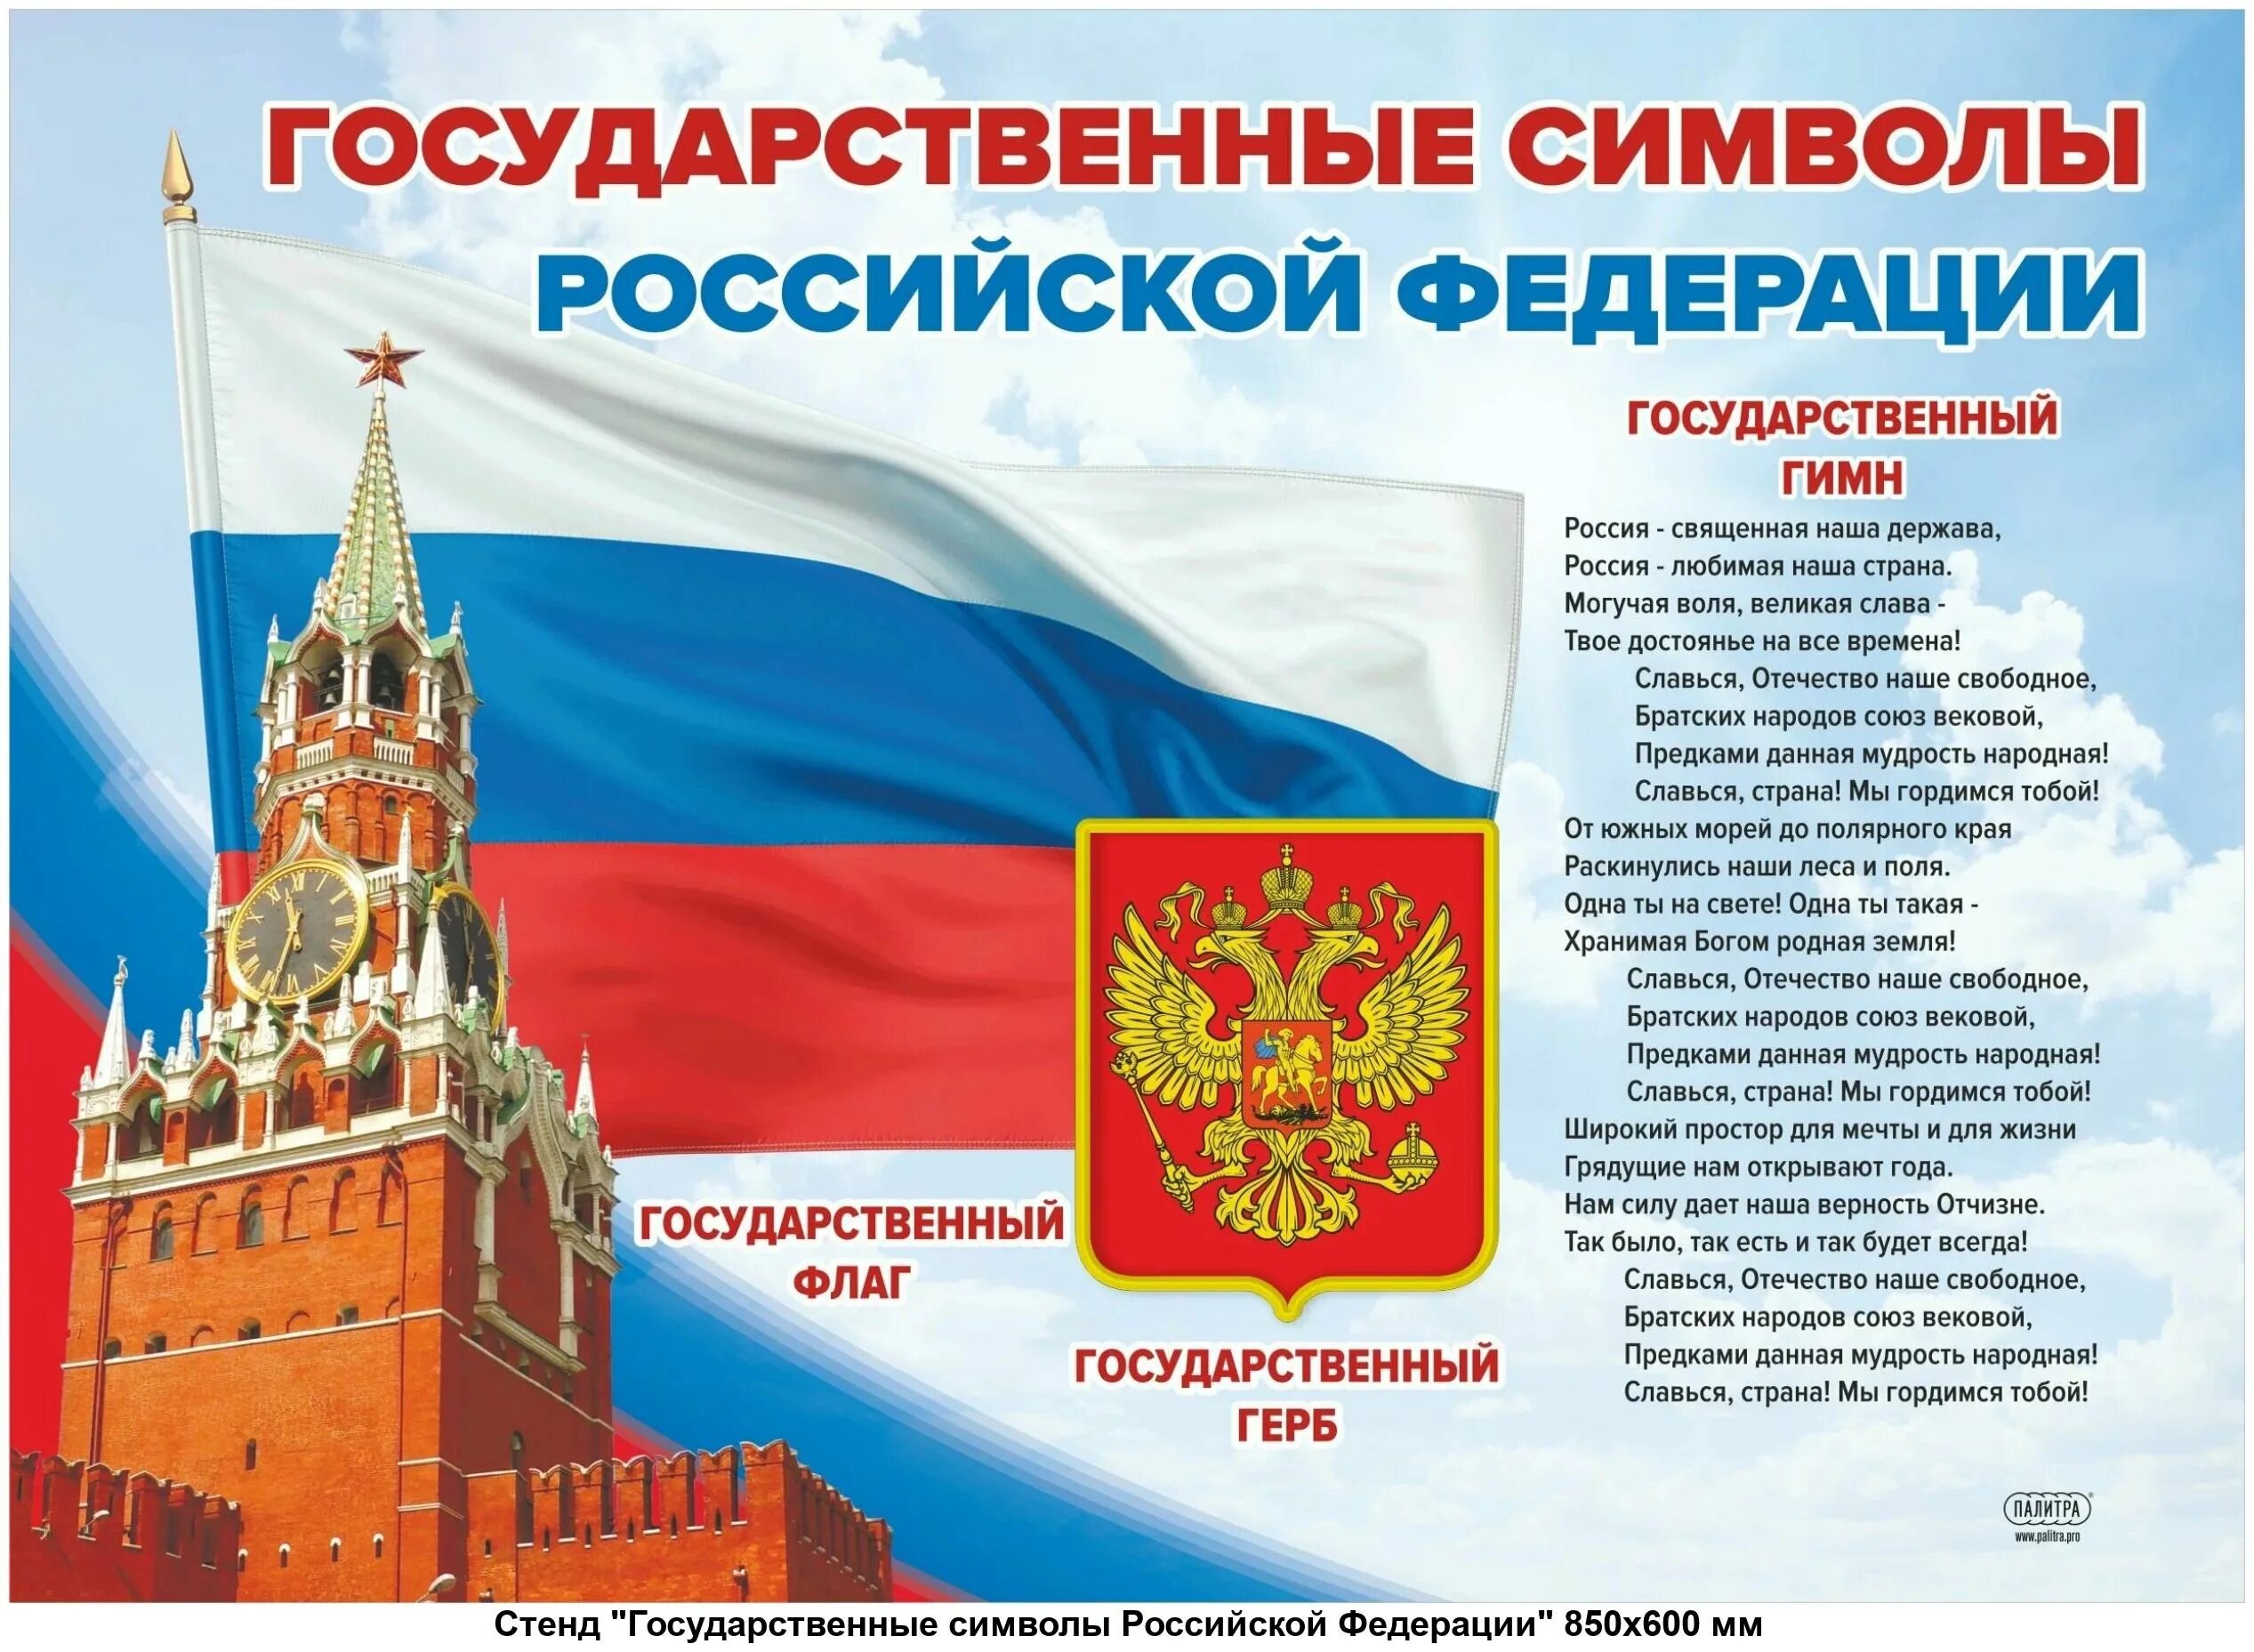 Какие есть государственные символы. Стенд "государственные символы Российской Федерации"1300*1000м. Государственные символи Росси.